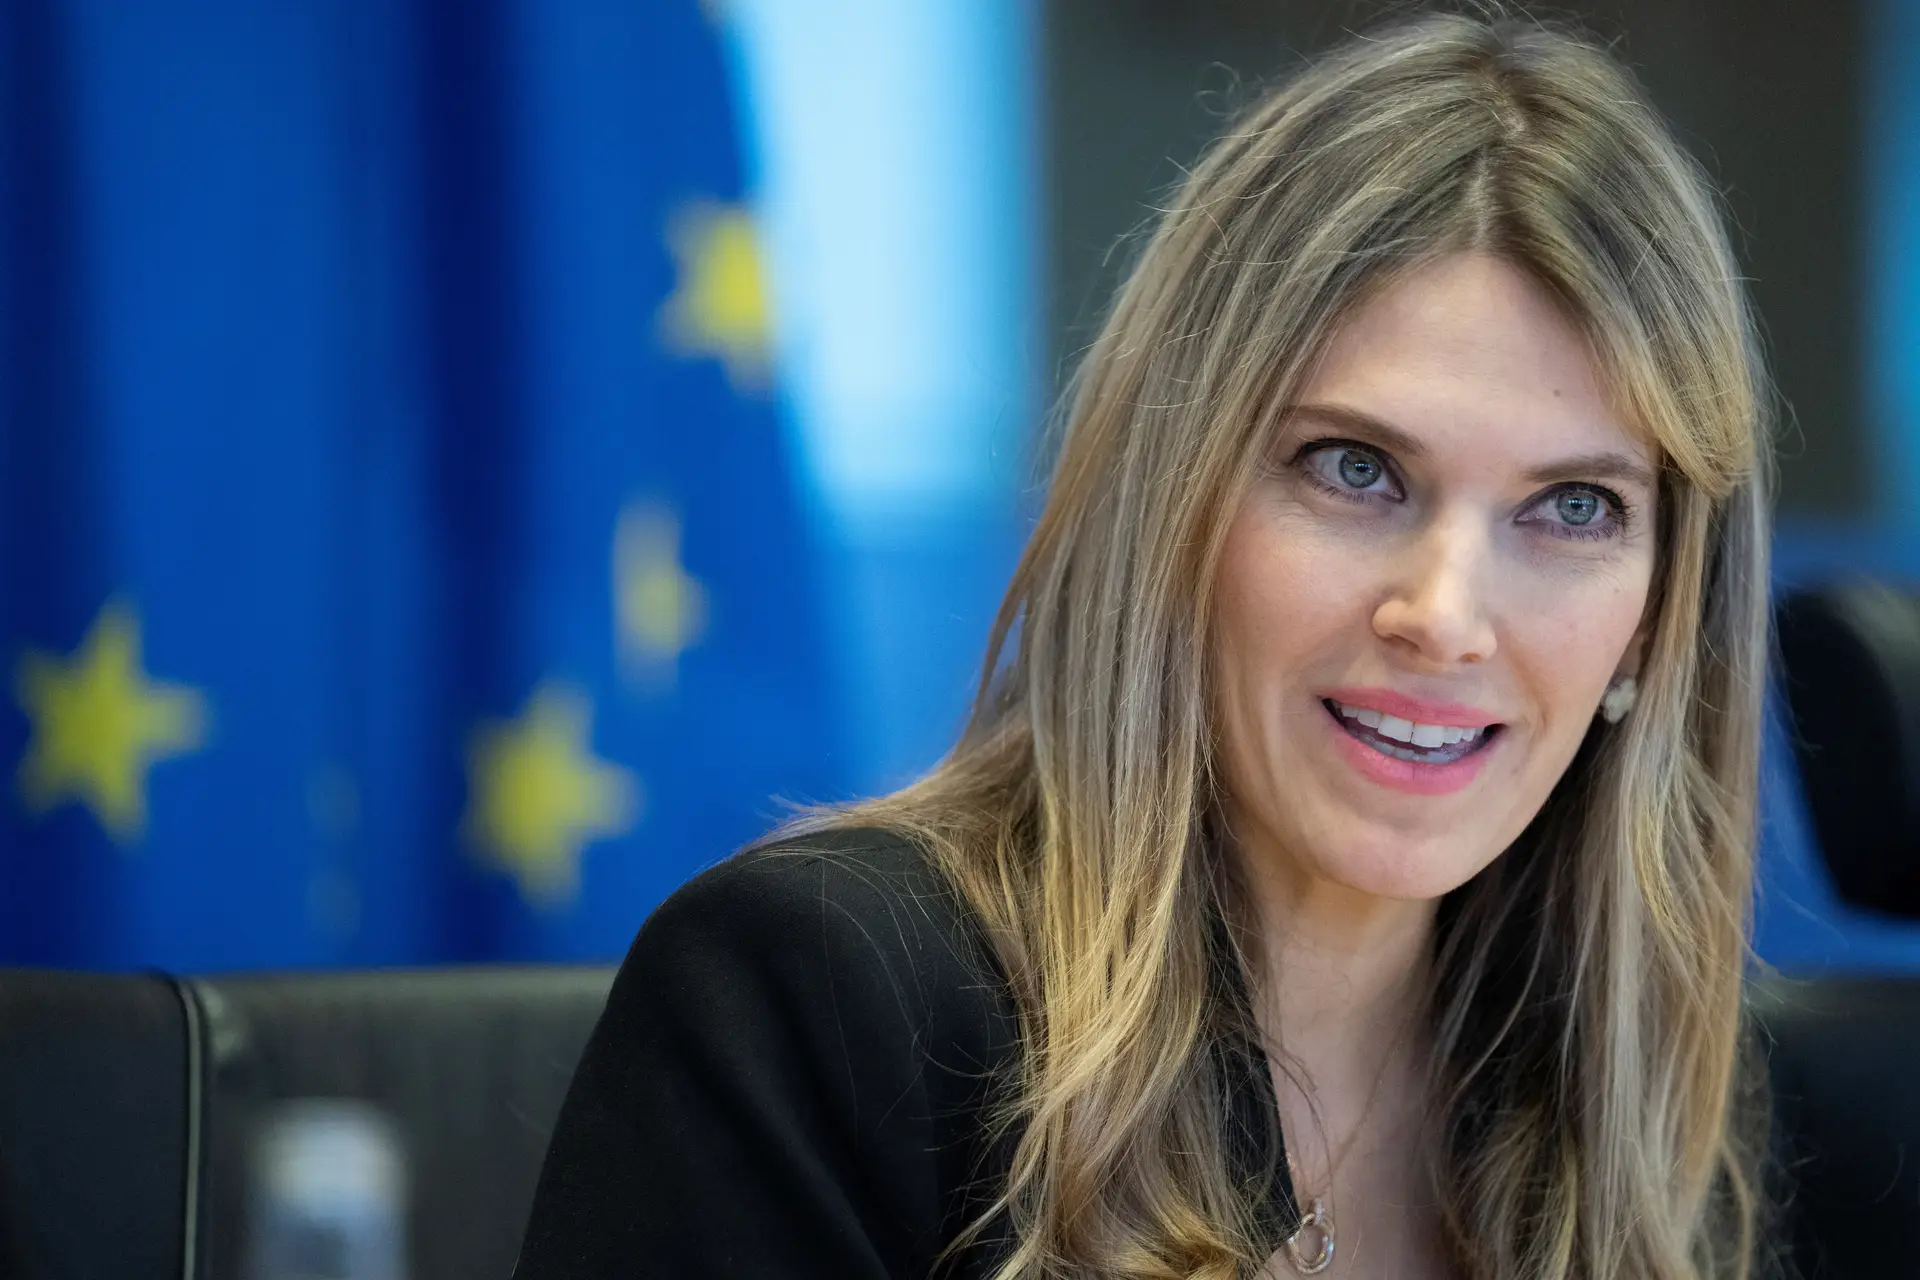 Eurodeputada permanece detida: Eva Kaili vai ser ouvida em tribunal a 22 de dezembro